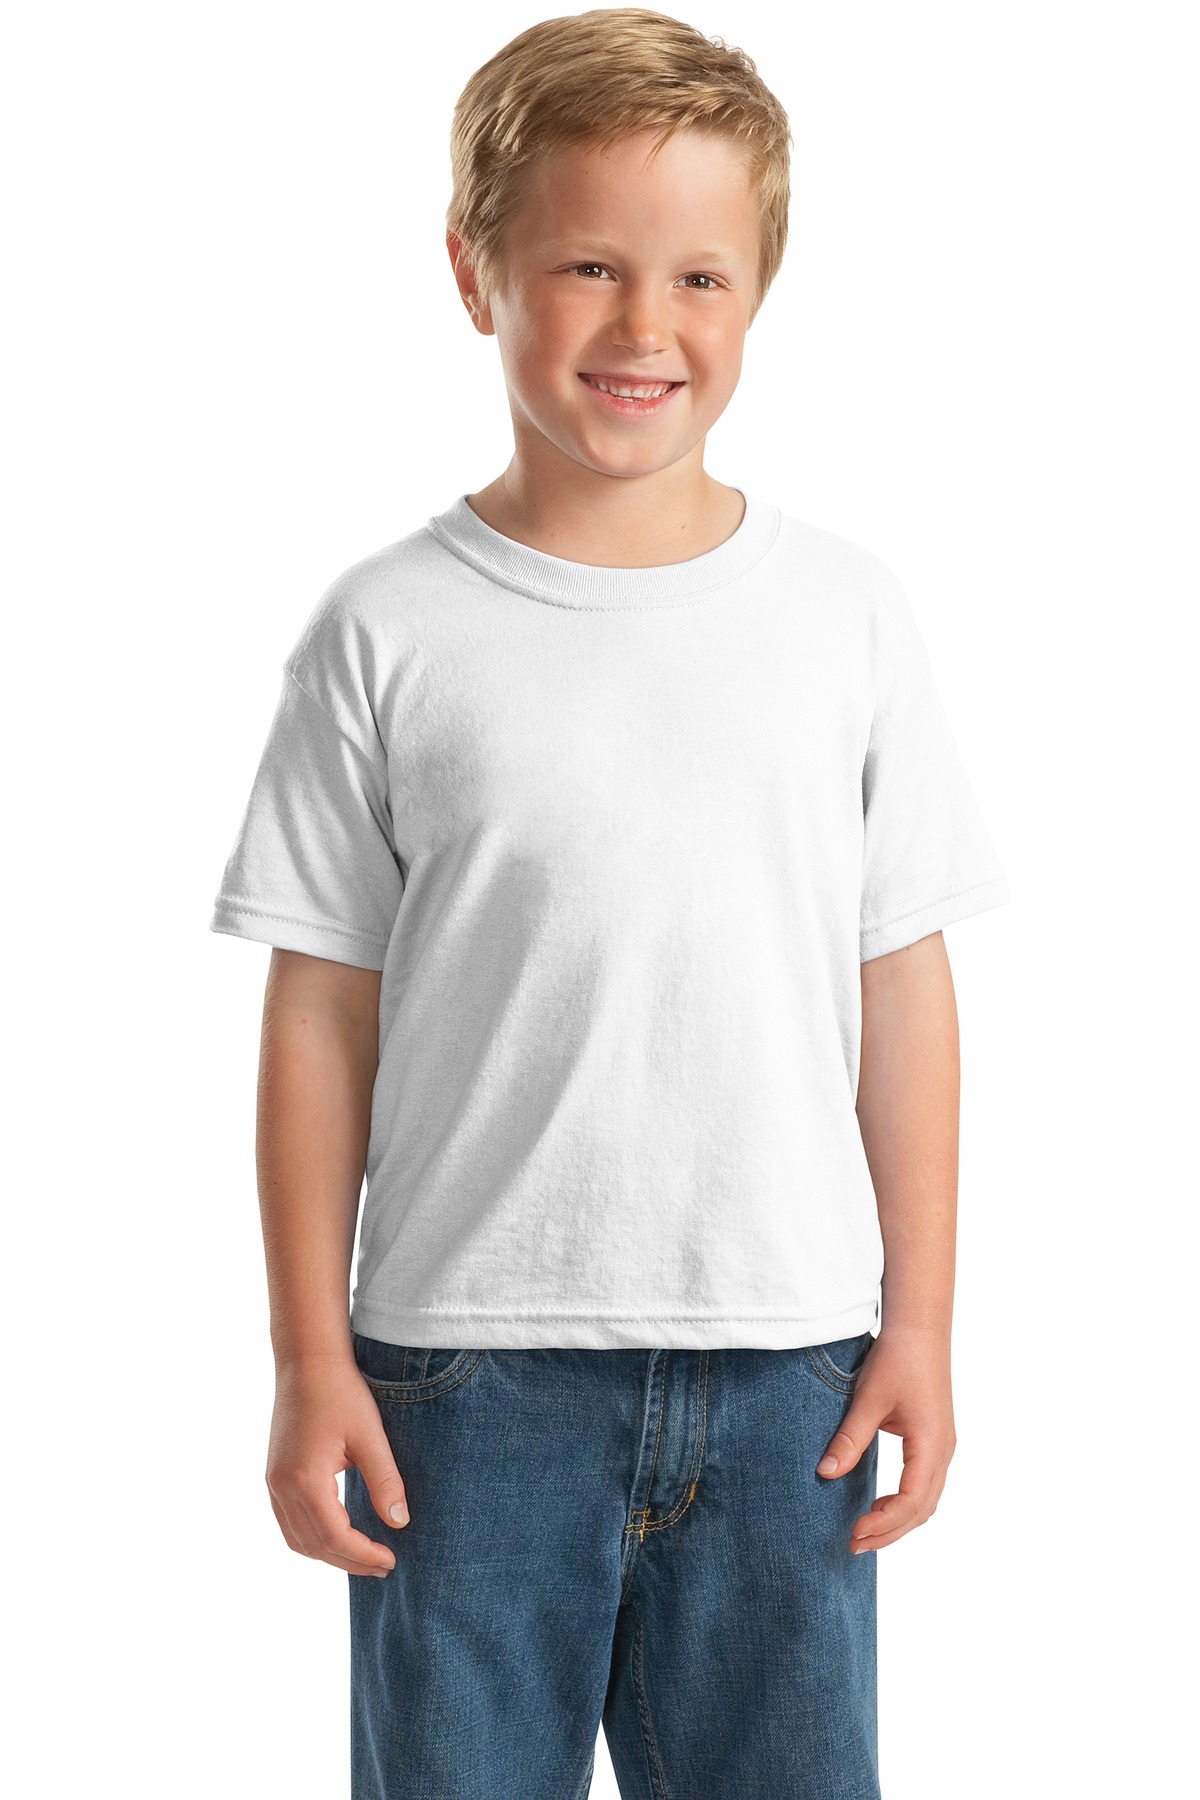 Gildan &#174;  - Youth DryBlend &#174;  50 Cotton/50 Poly T-Shirt.  8000B